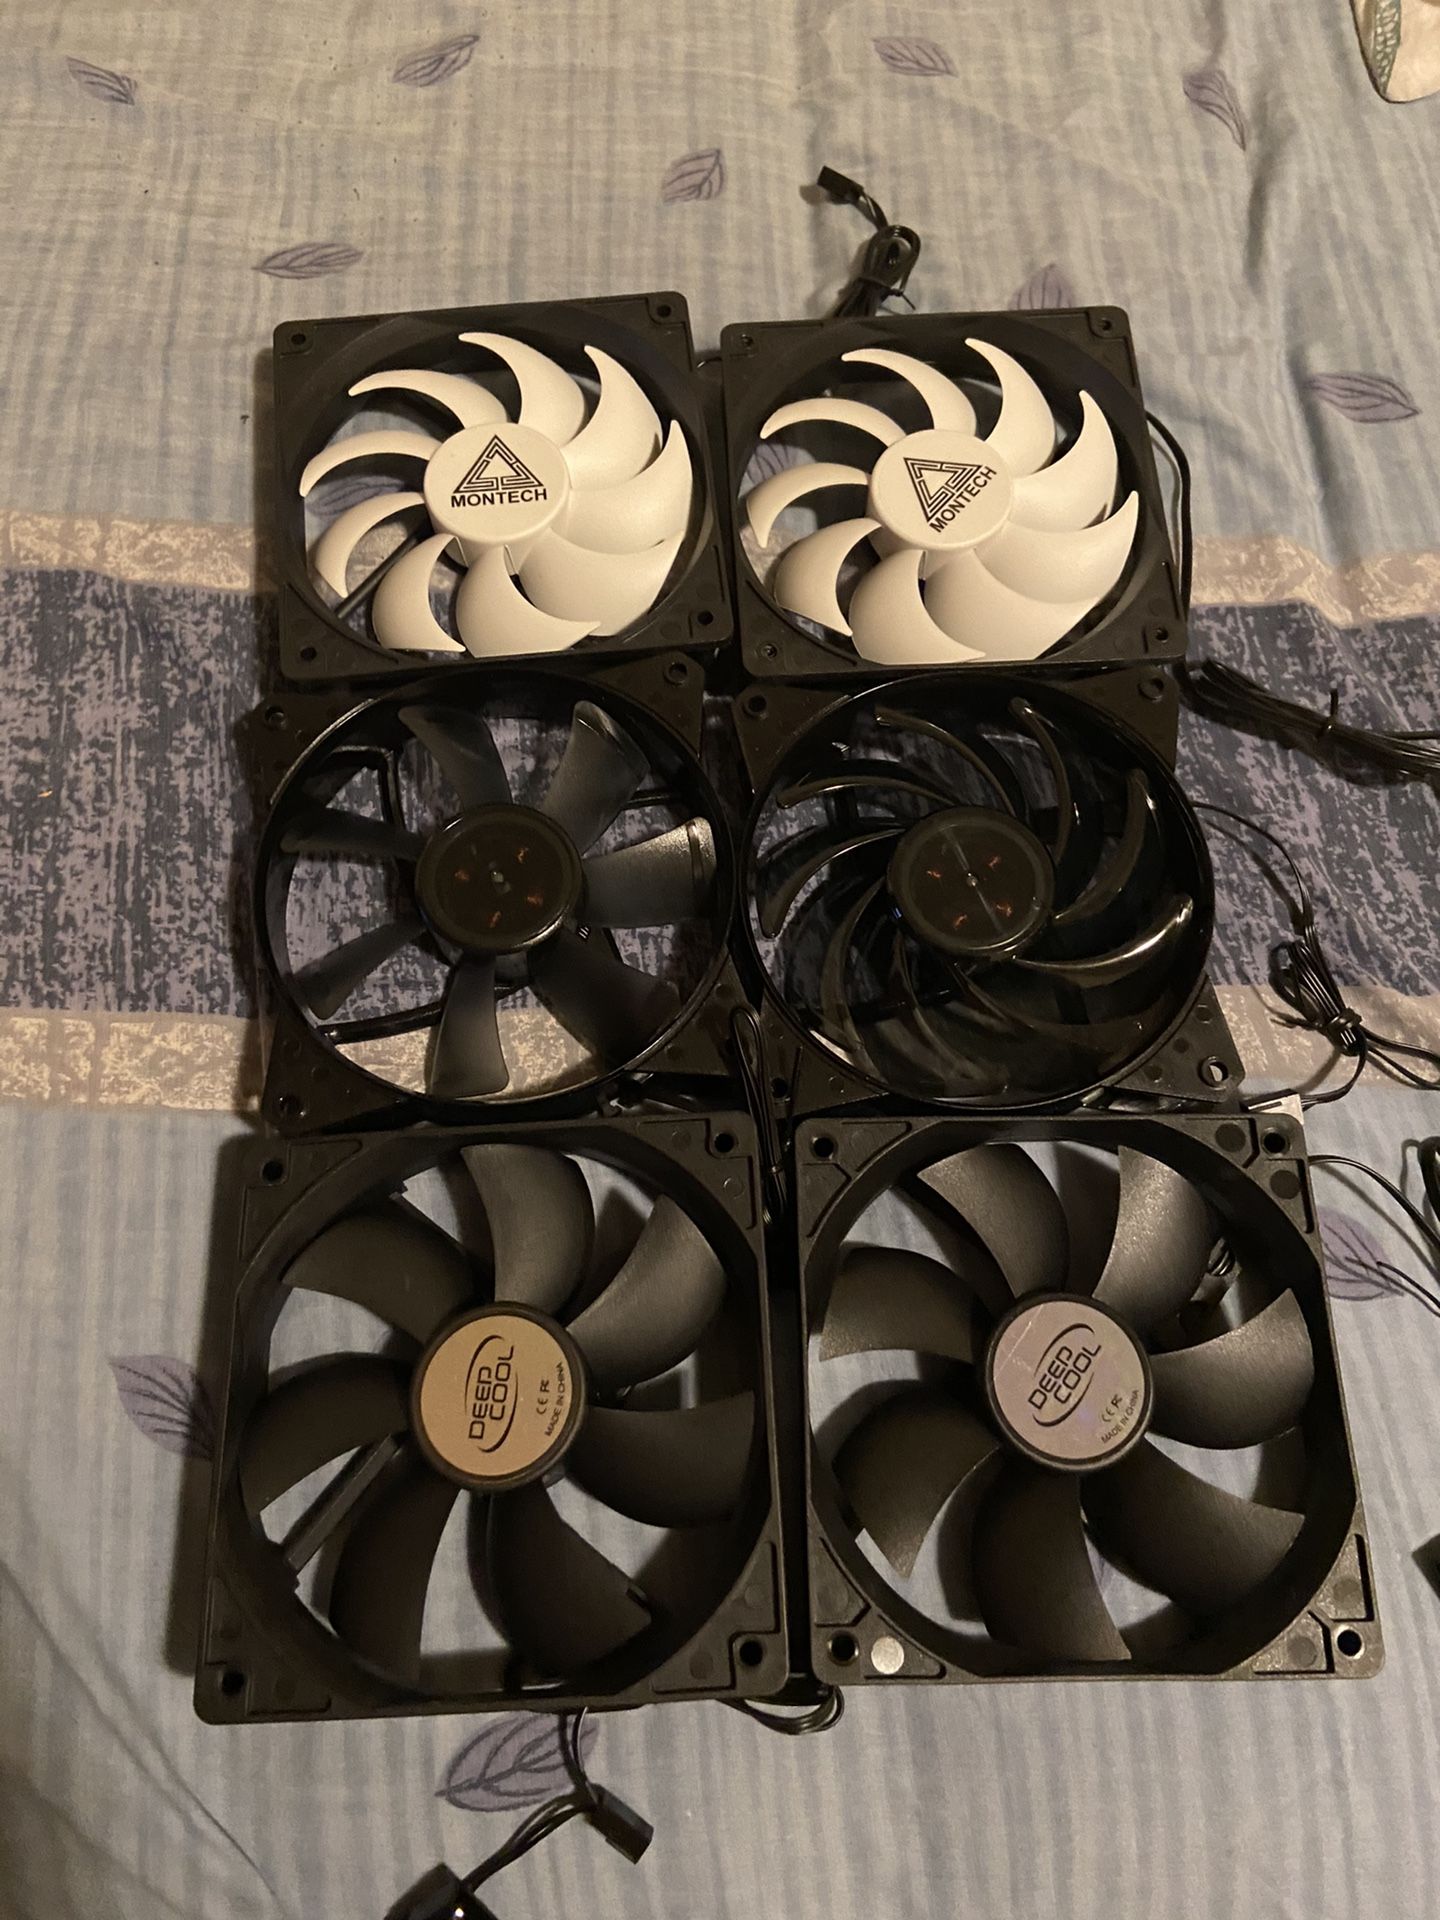 6 pc 120mm case fans